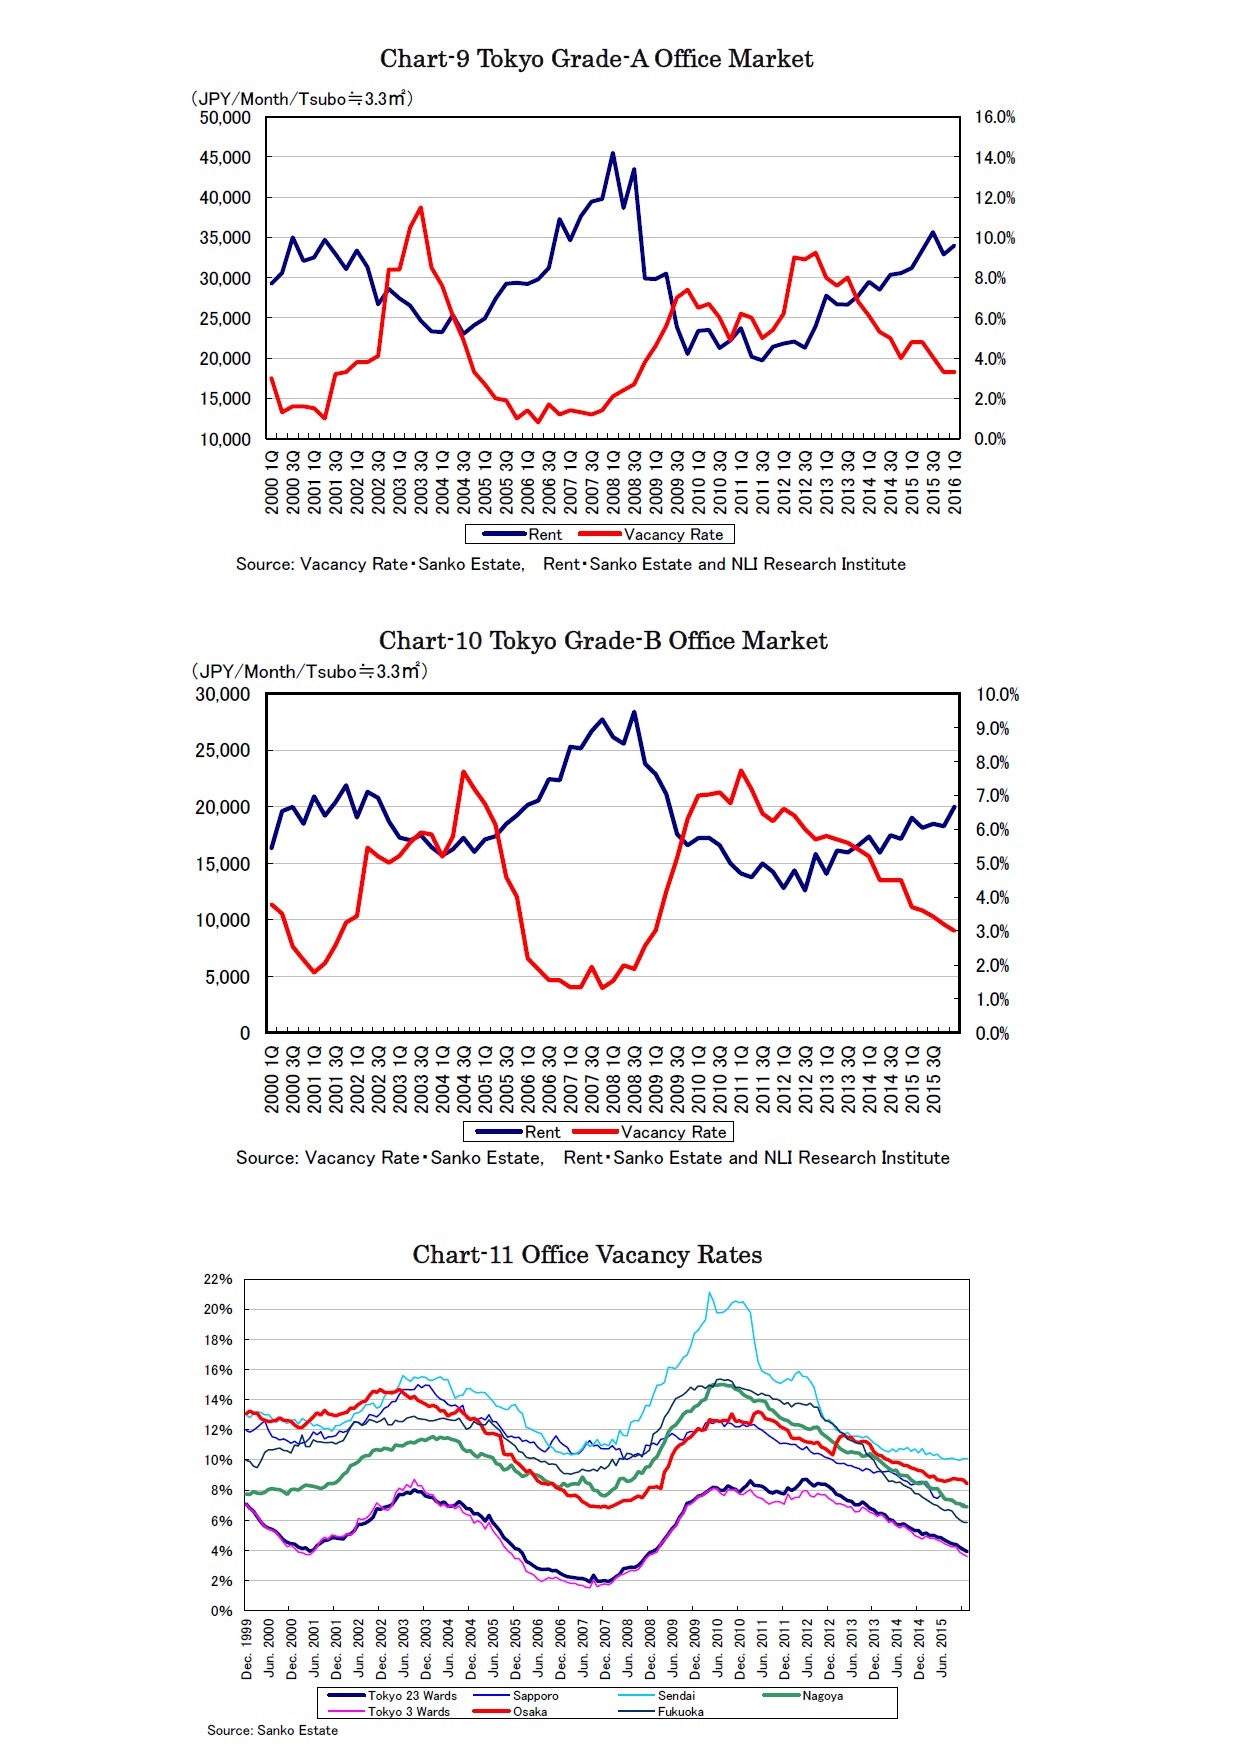 Chart-9 Tokyo Grade-A Office Market/Chart-10 Tokyo Grade-B Office Market/Chart-11 Office Vacancy Rates